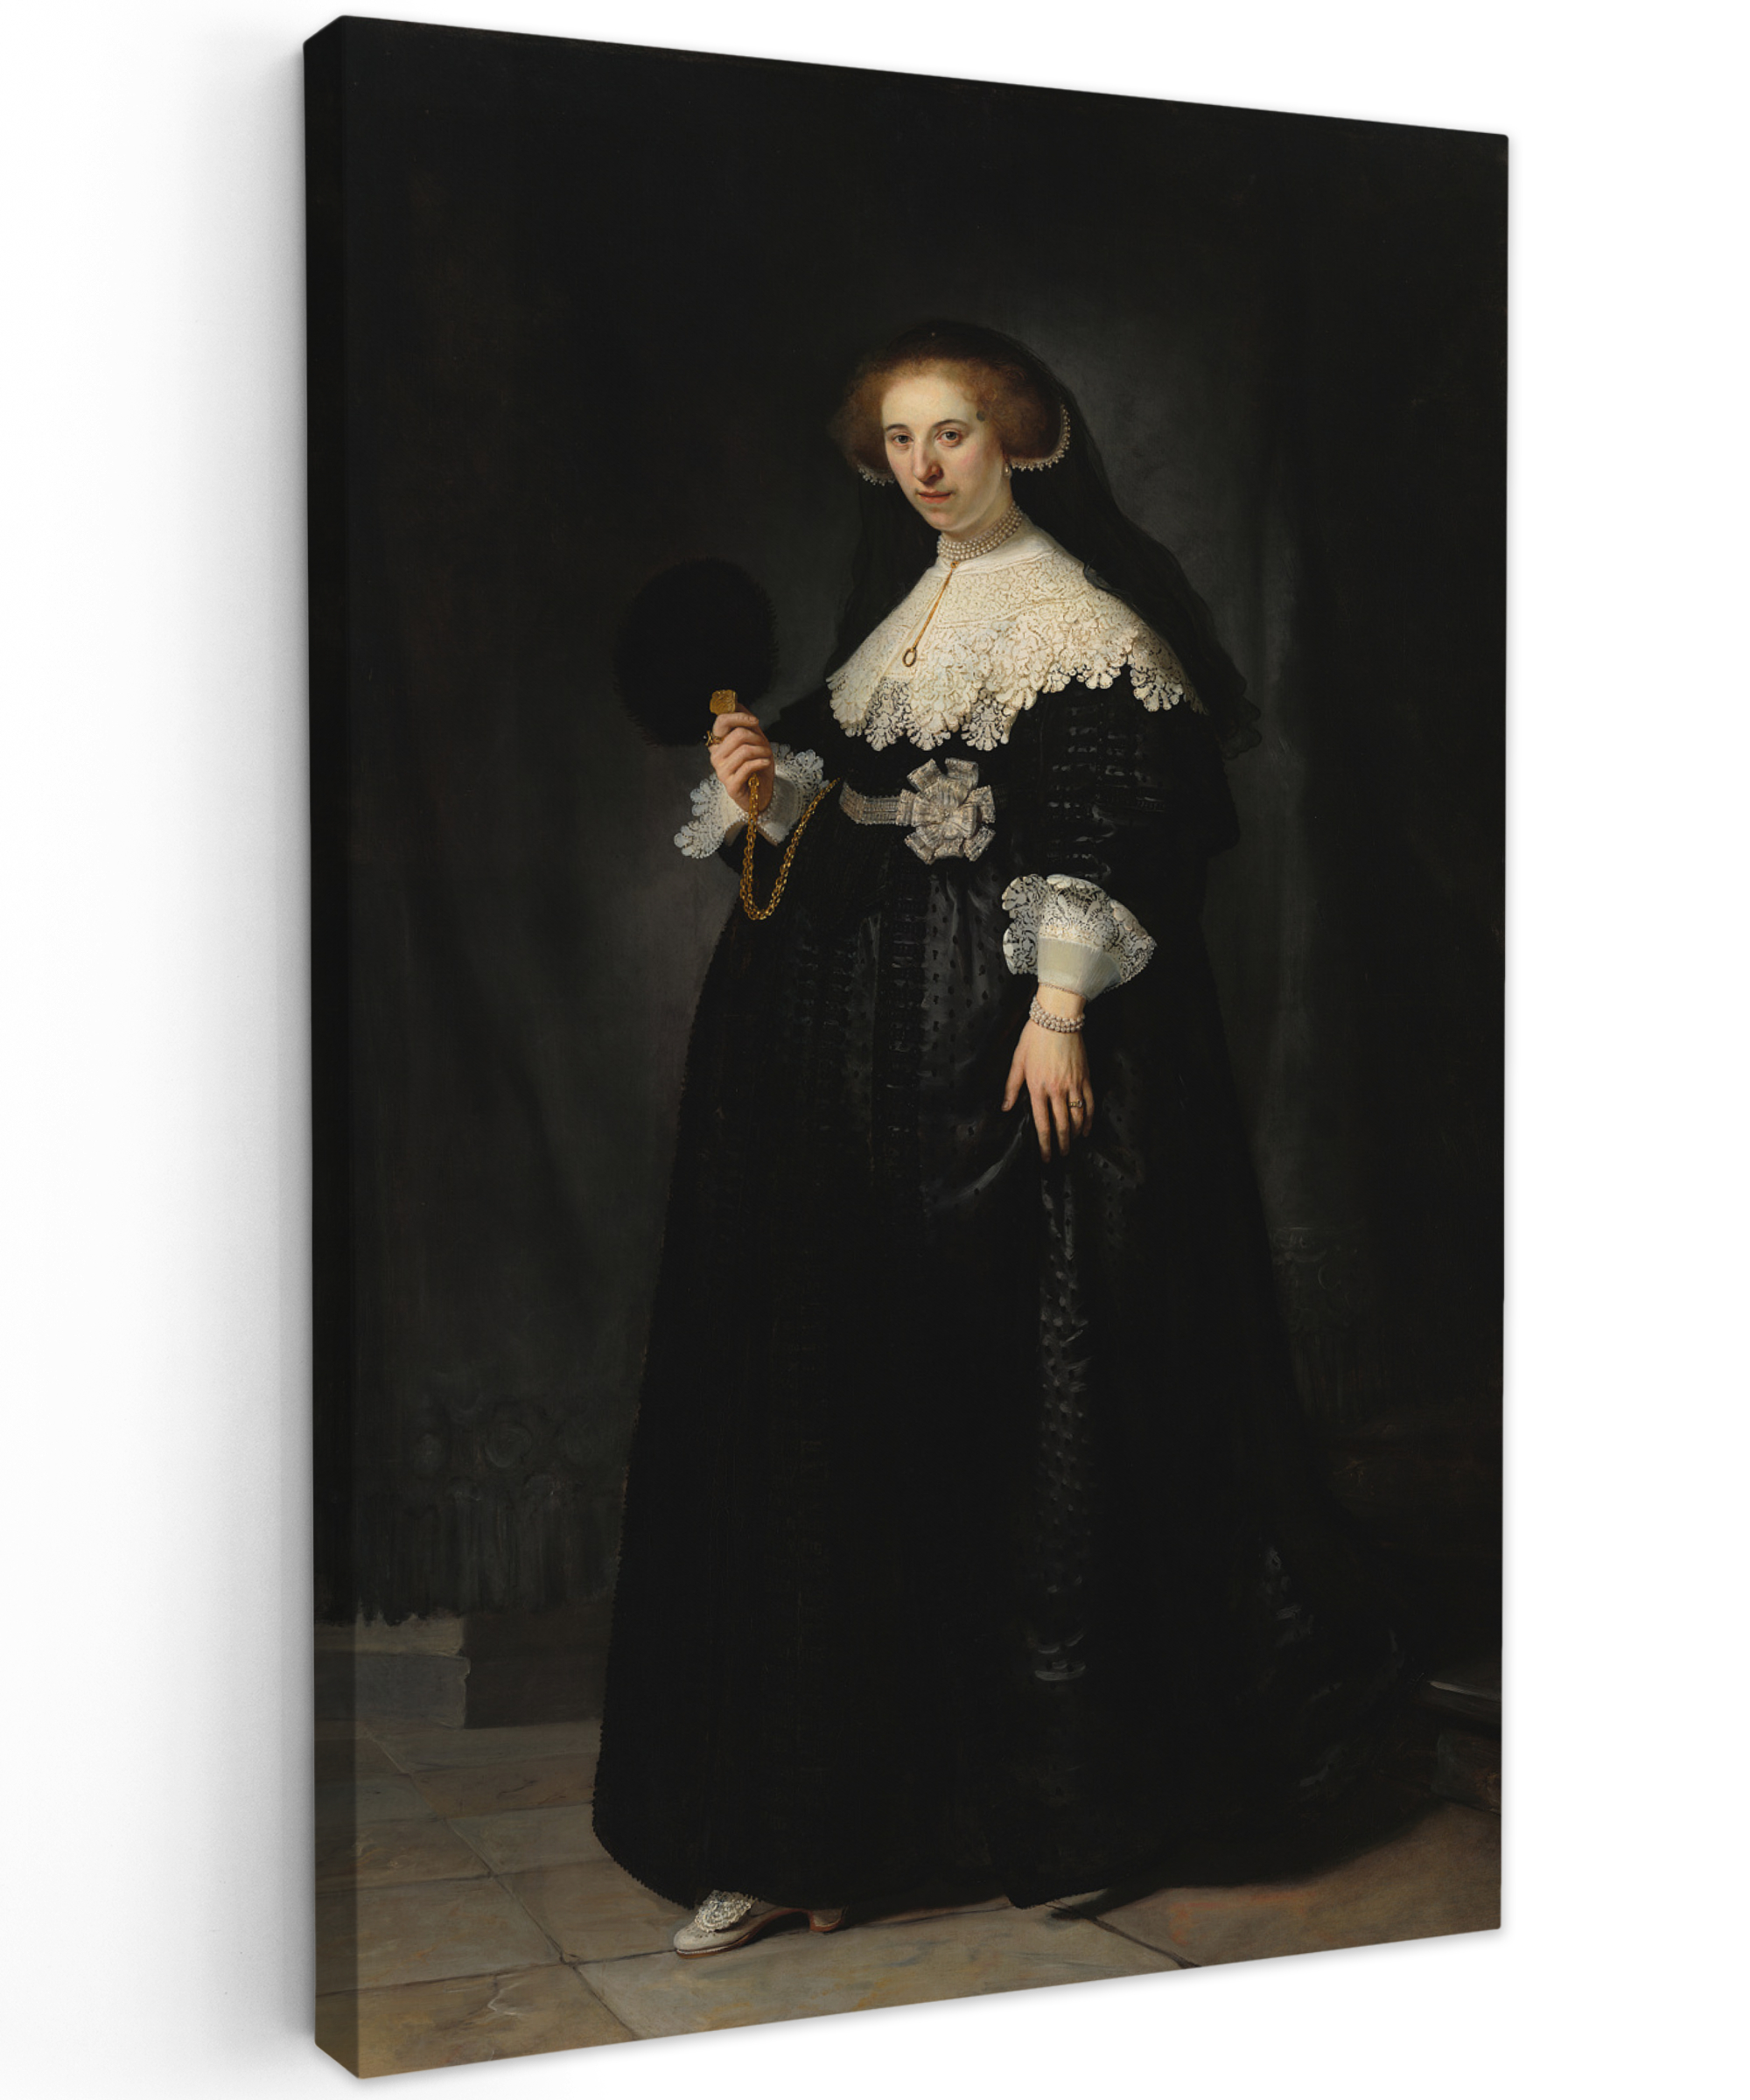 Tableau sur toile - Le portrait de mariage d'Oopjen Coppit - Rembrandt van Rijn